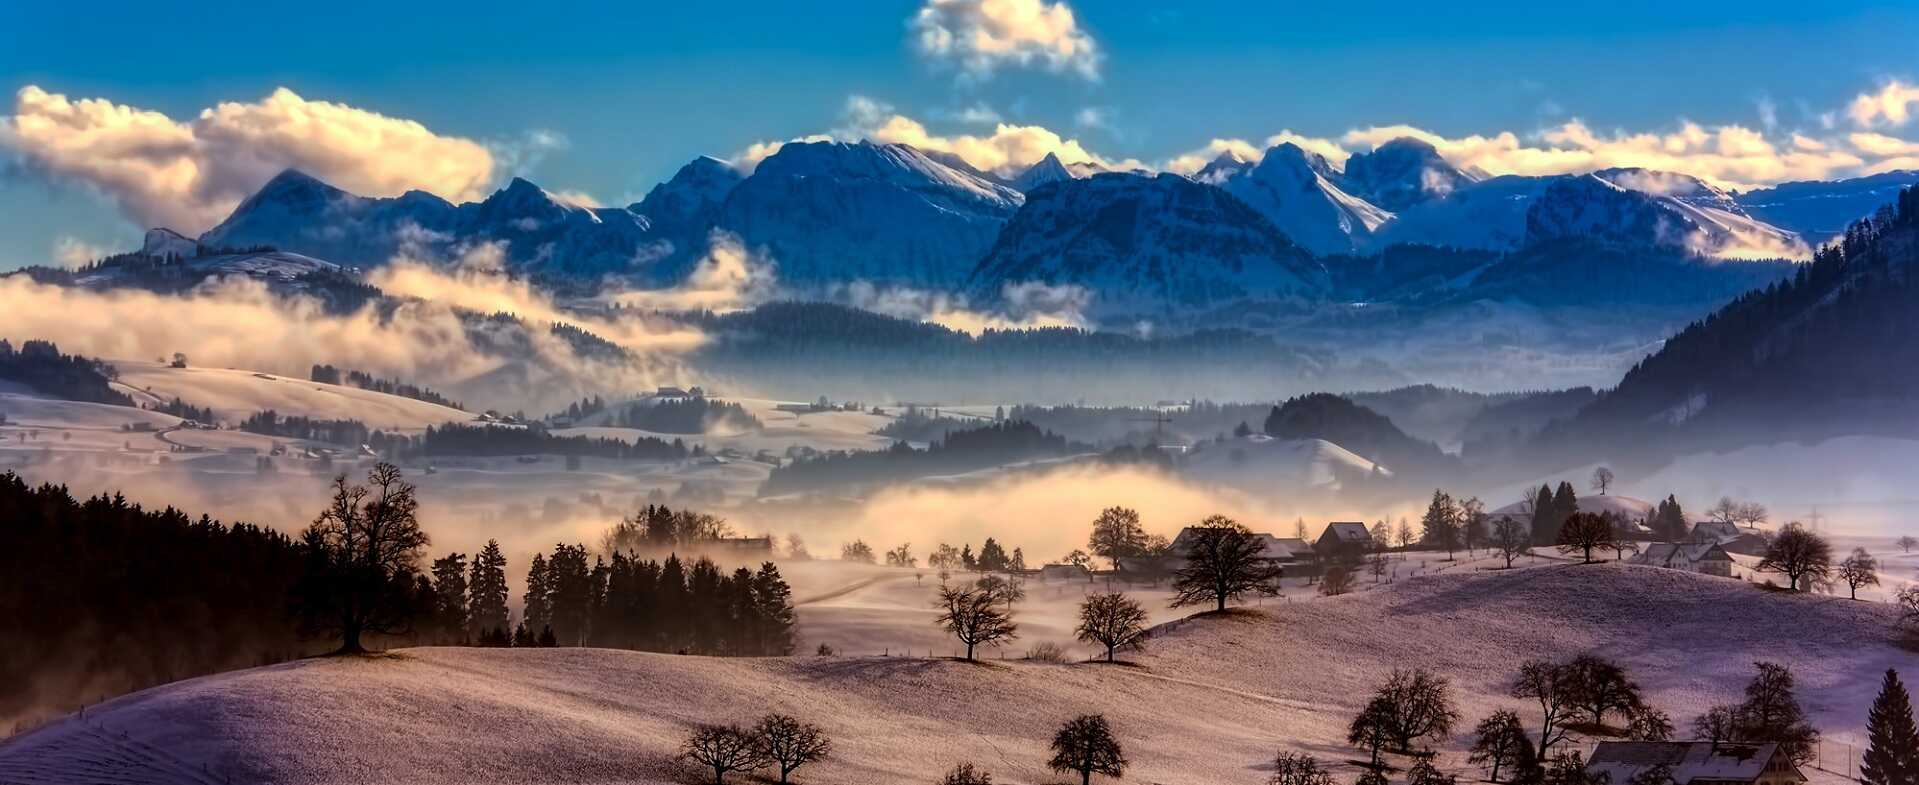 paysage de montagnes en hiver